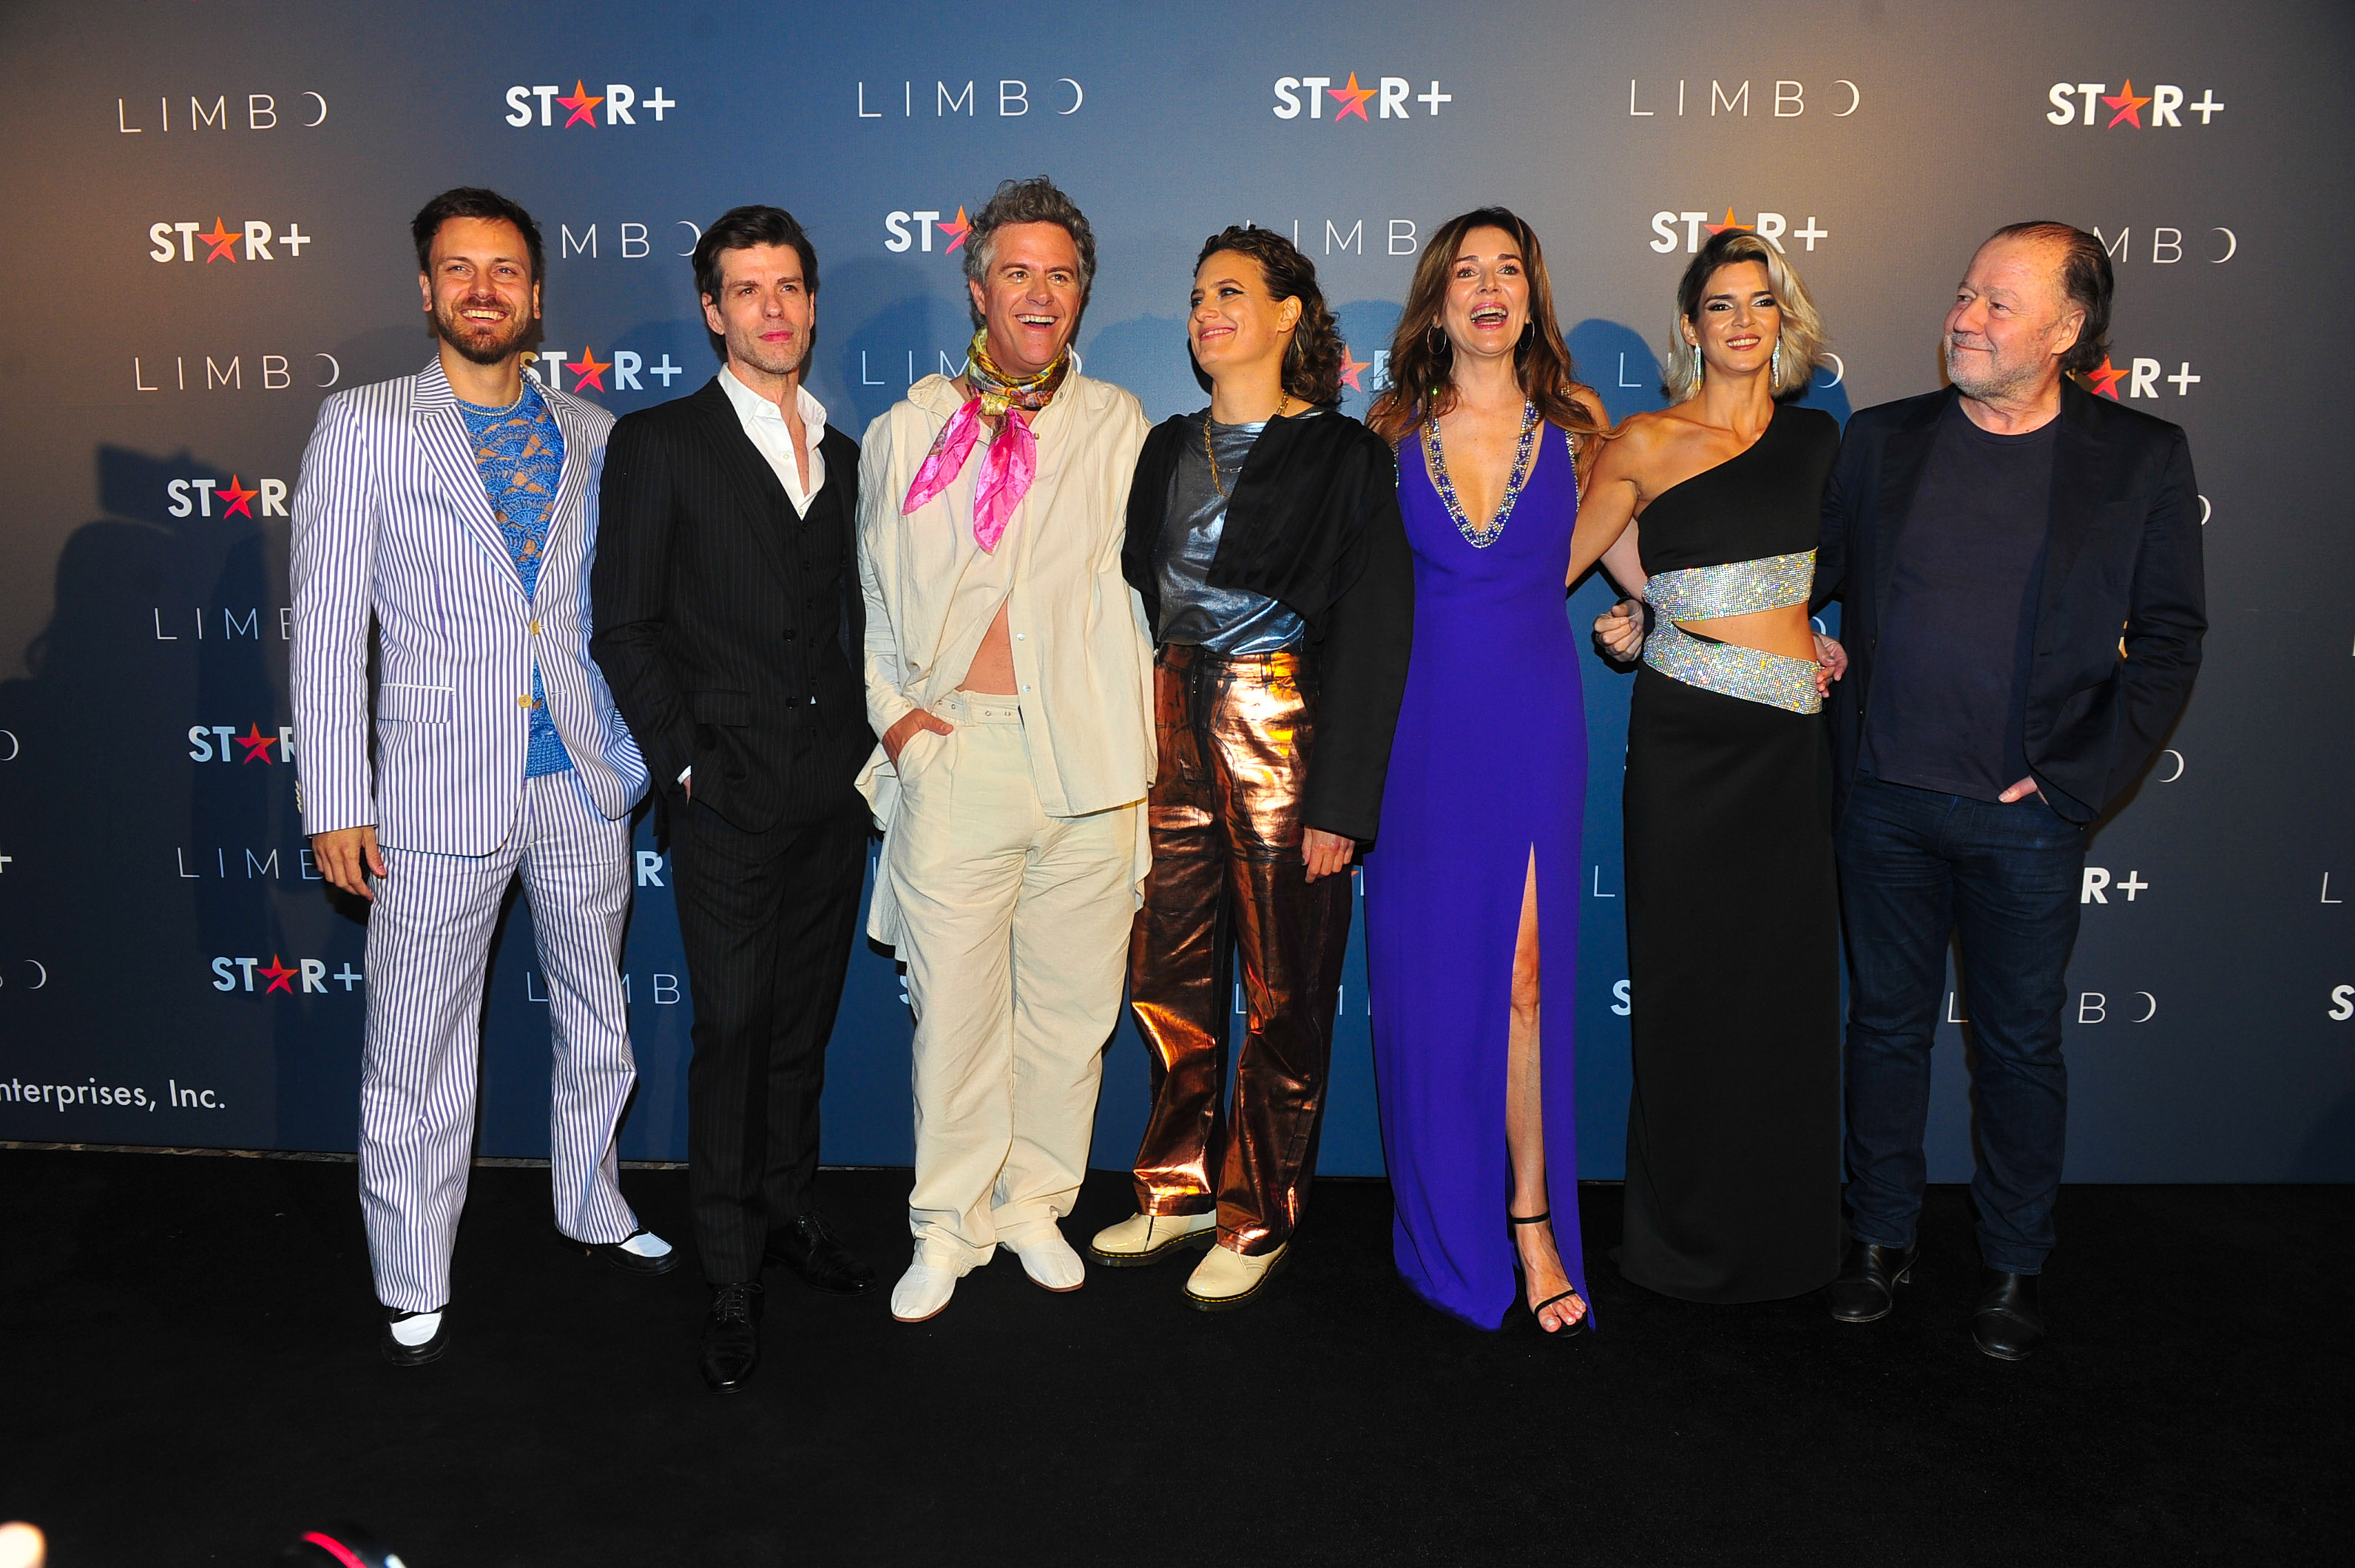 El elenco de Limbo, la nueva estrella + apuesta (Crédito: Fotos RS)